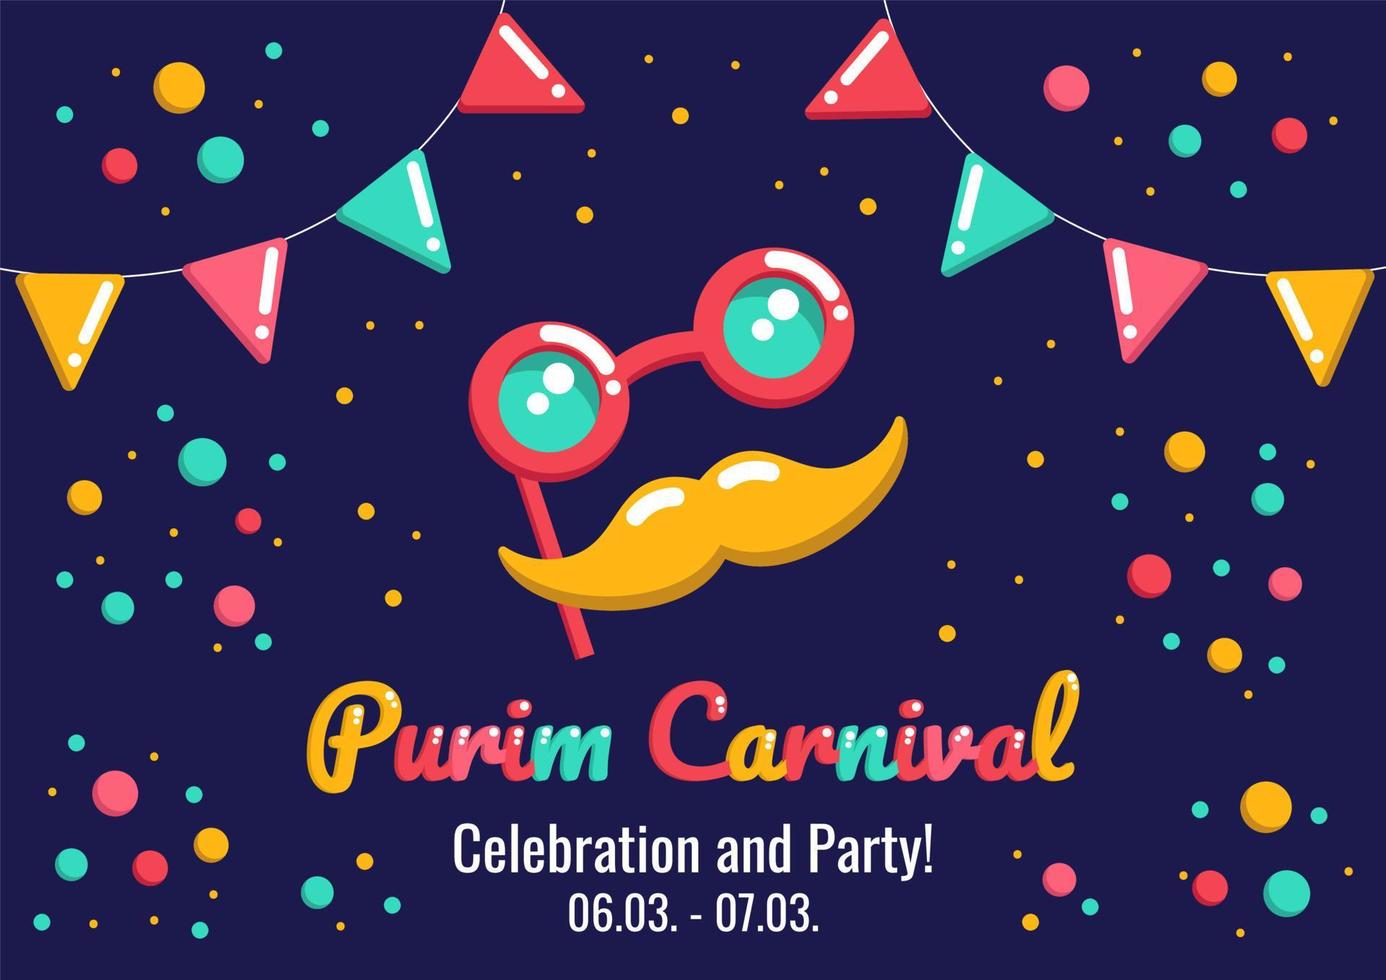 anúncio de carnaval de feriado purim com máscara engraçada com óculos e bigode, bandeiras e confetes em um fundo escuro, saudação, convite para um feriado judaico. vetor